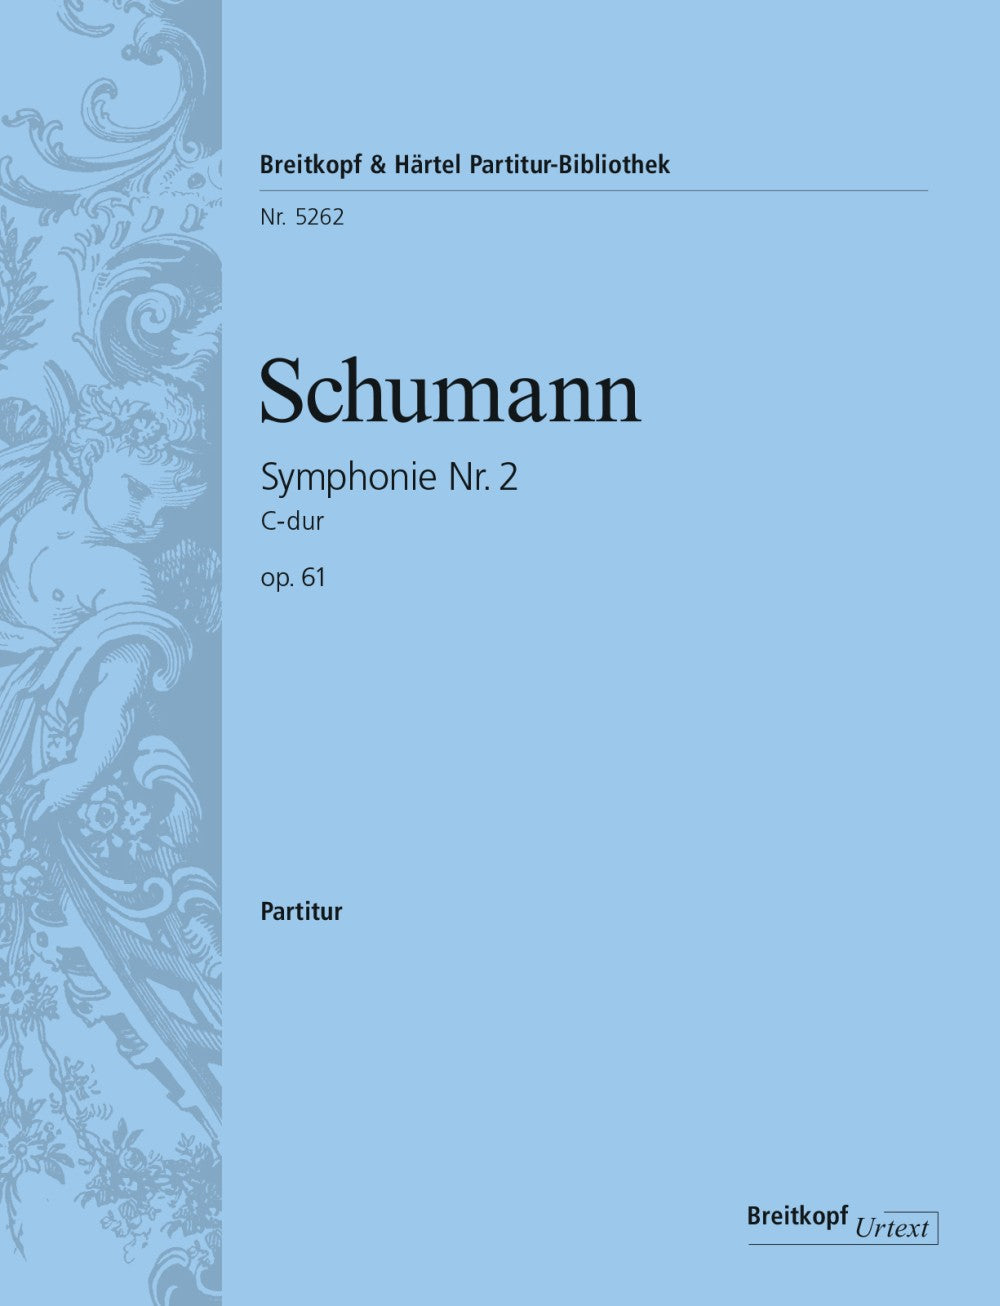 Schumann Symphony No. 2 in C major Op. 61